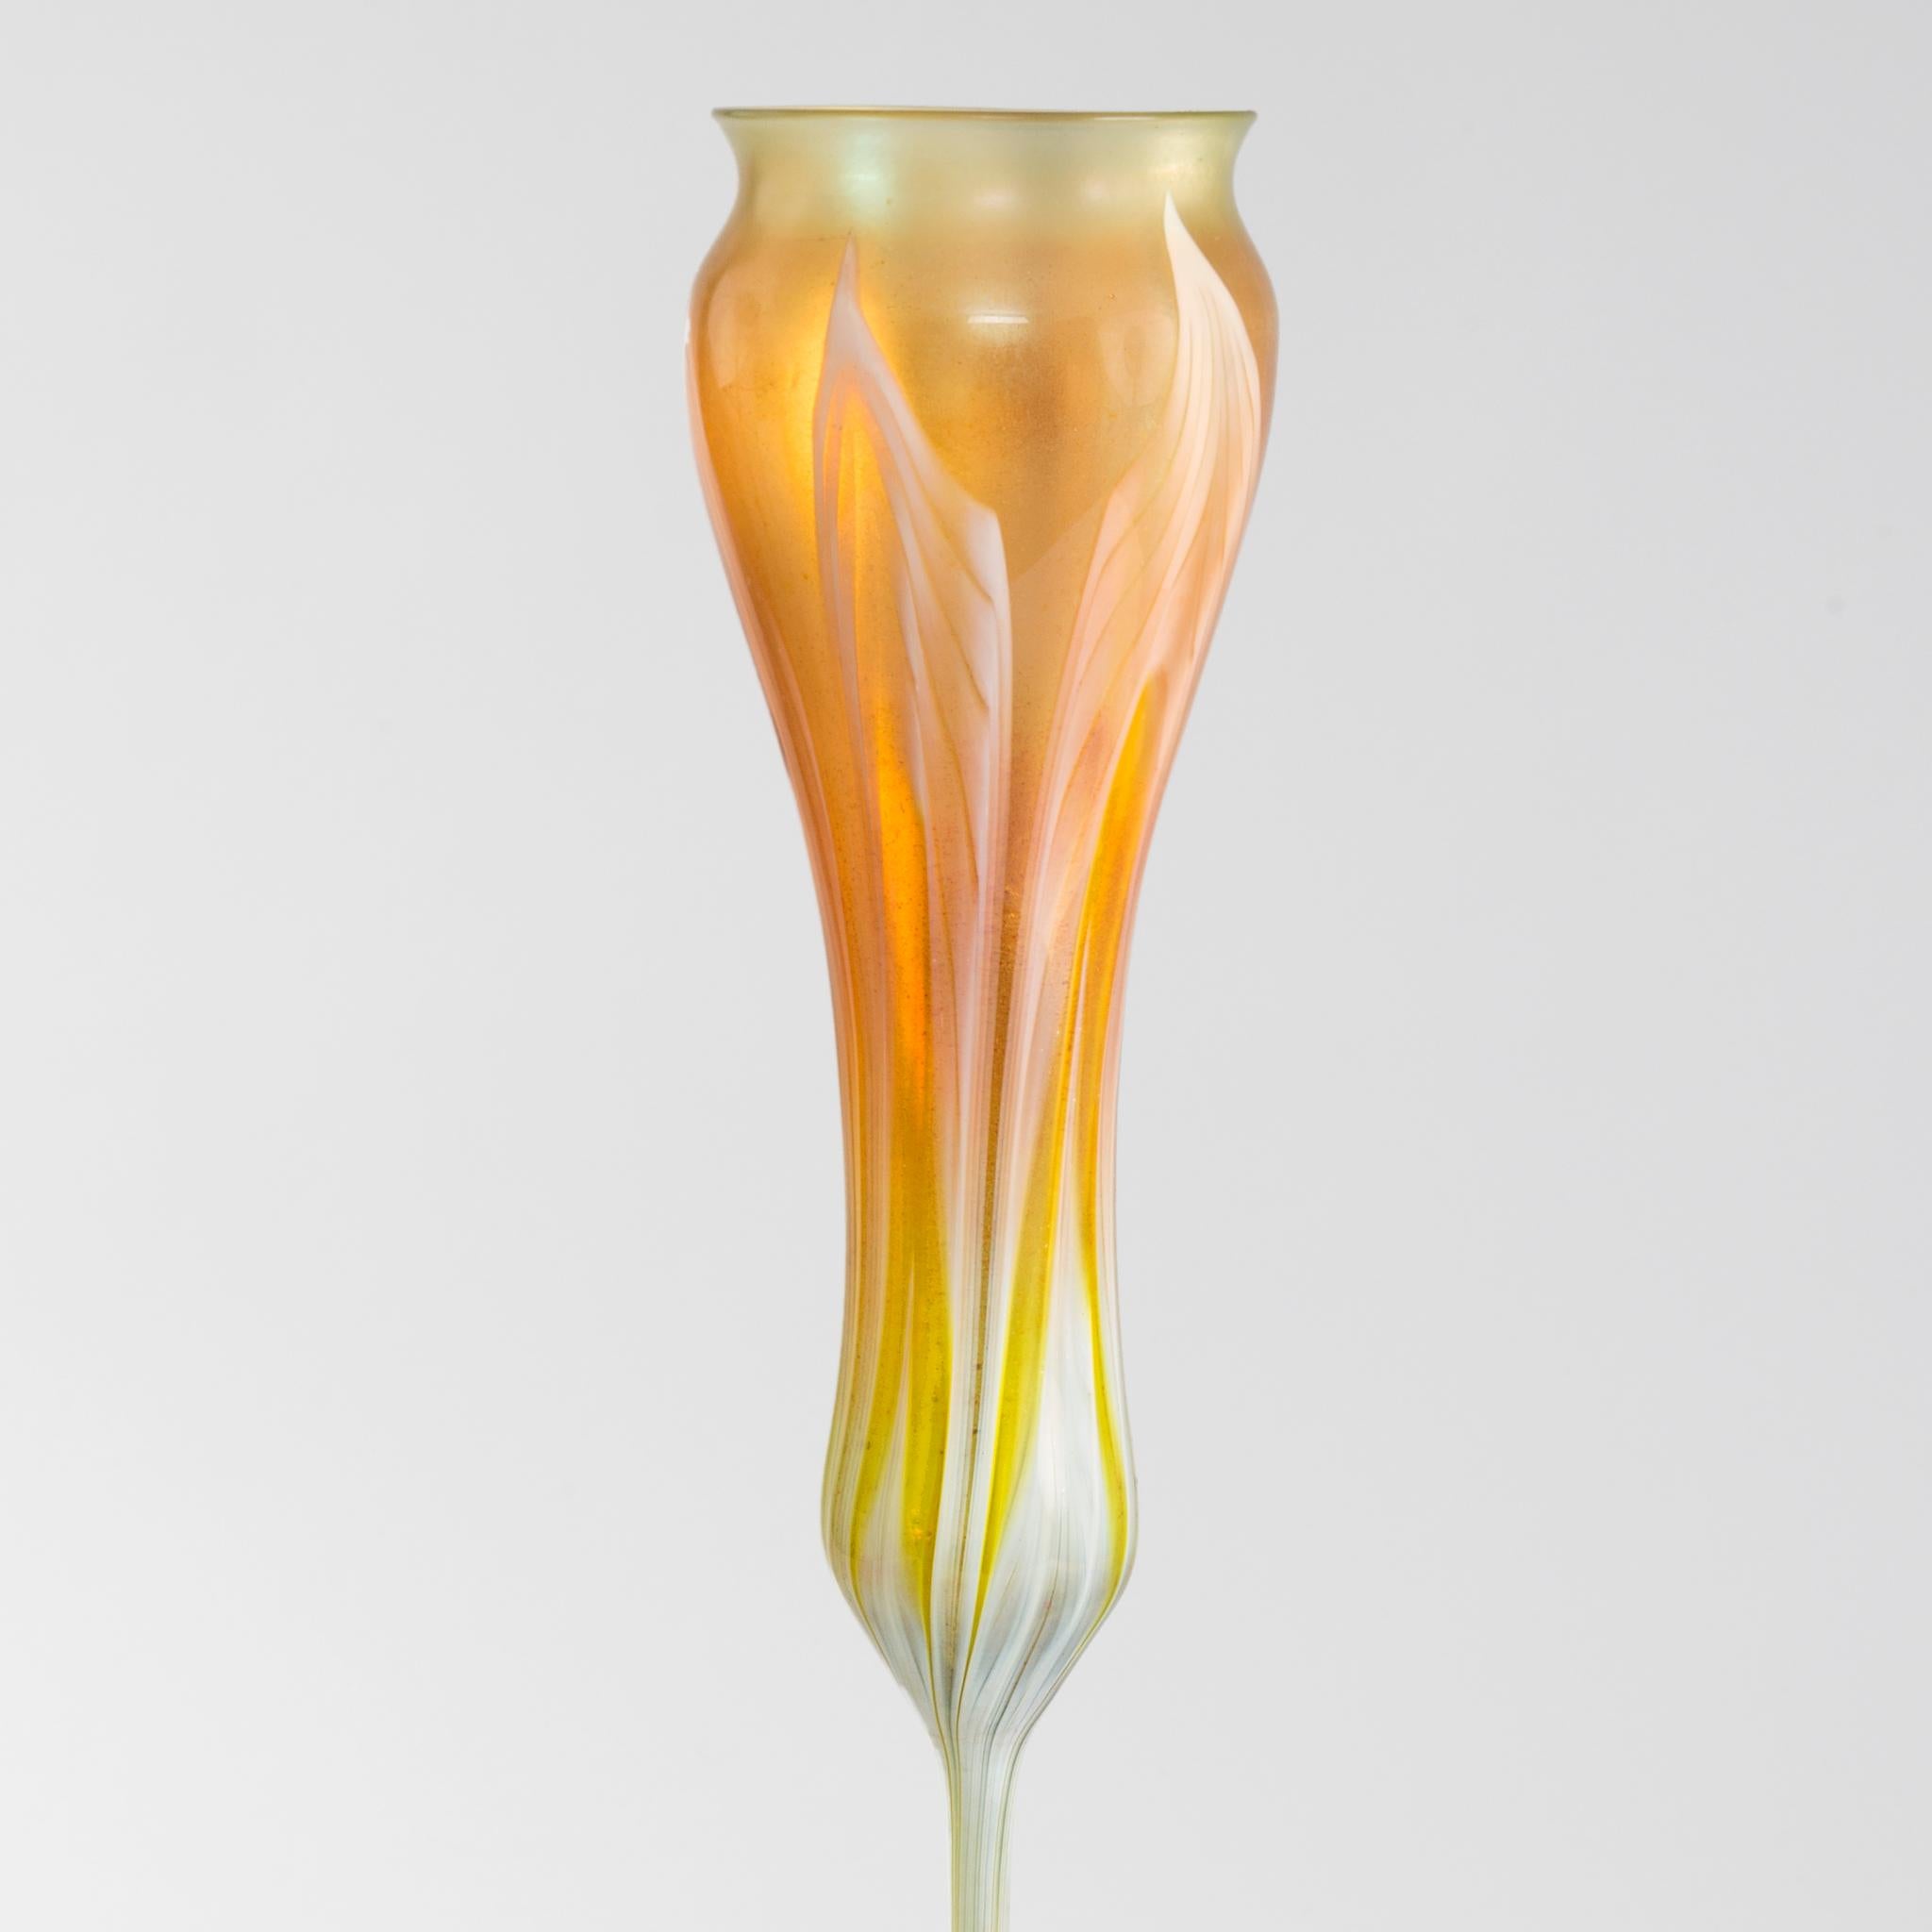 Ce vase en forme de fleur en verre Favrile, des Tiffany Studios de New York, est censé suggérer les formes de calice, ouvertes ou fermées, des fleurs de crocus ou de tulipe. Ce vase jaune orangé richement teinté est haut et mince et coloré avec des